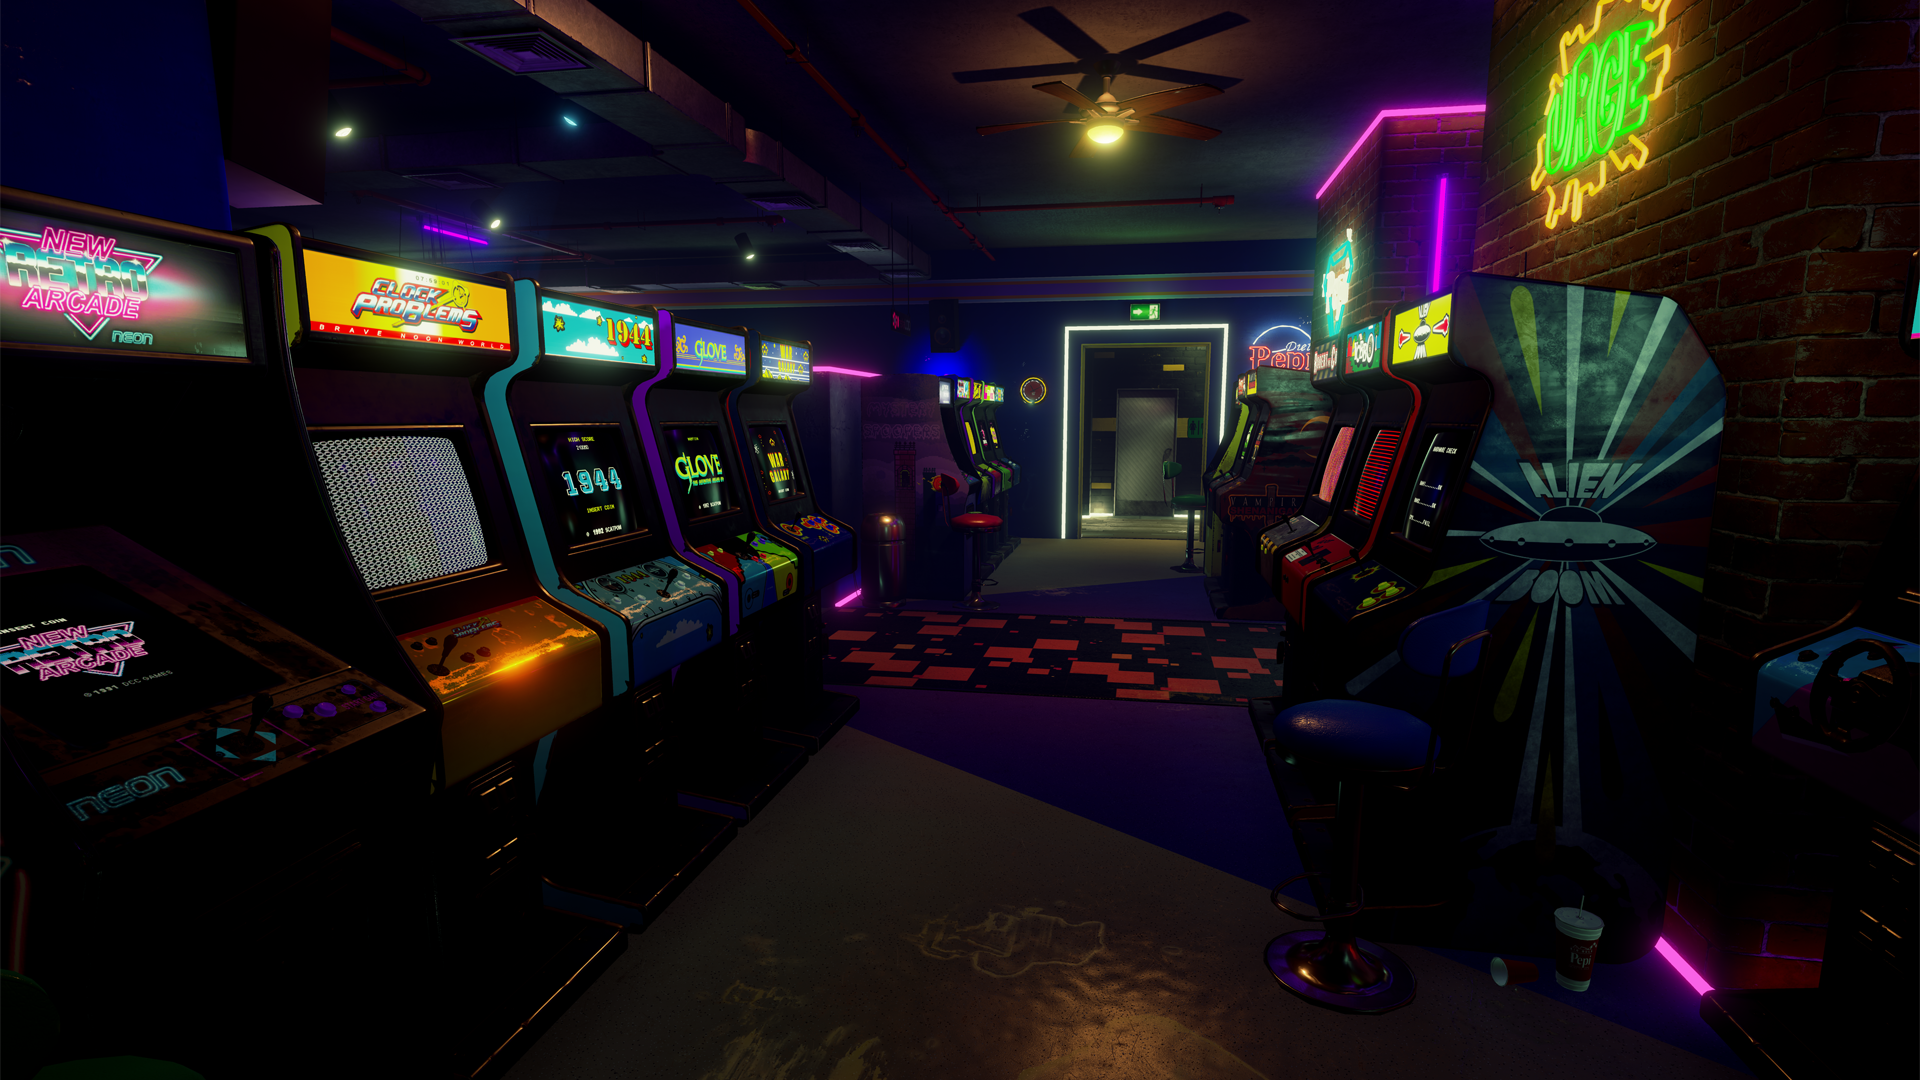 New retro casino официальное зеркало. NEWRETROARCADE: Neon. Игровой автомат Retro Arcade. Аркадный зал 80х неон. Игровой автомат ретро Вейв.